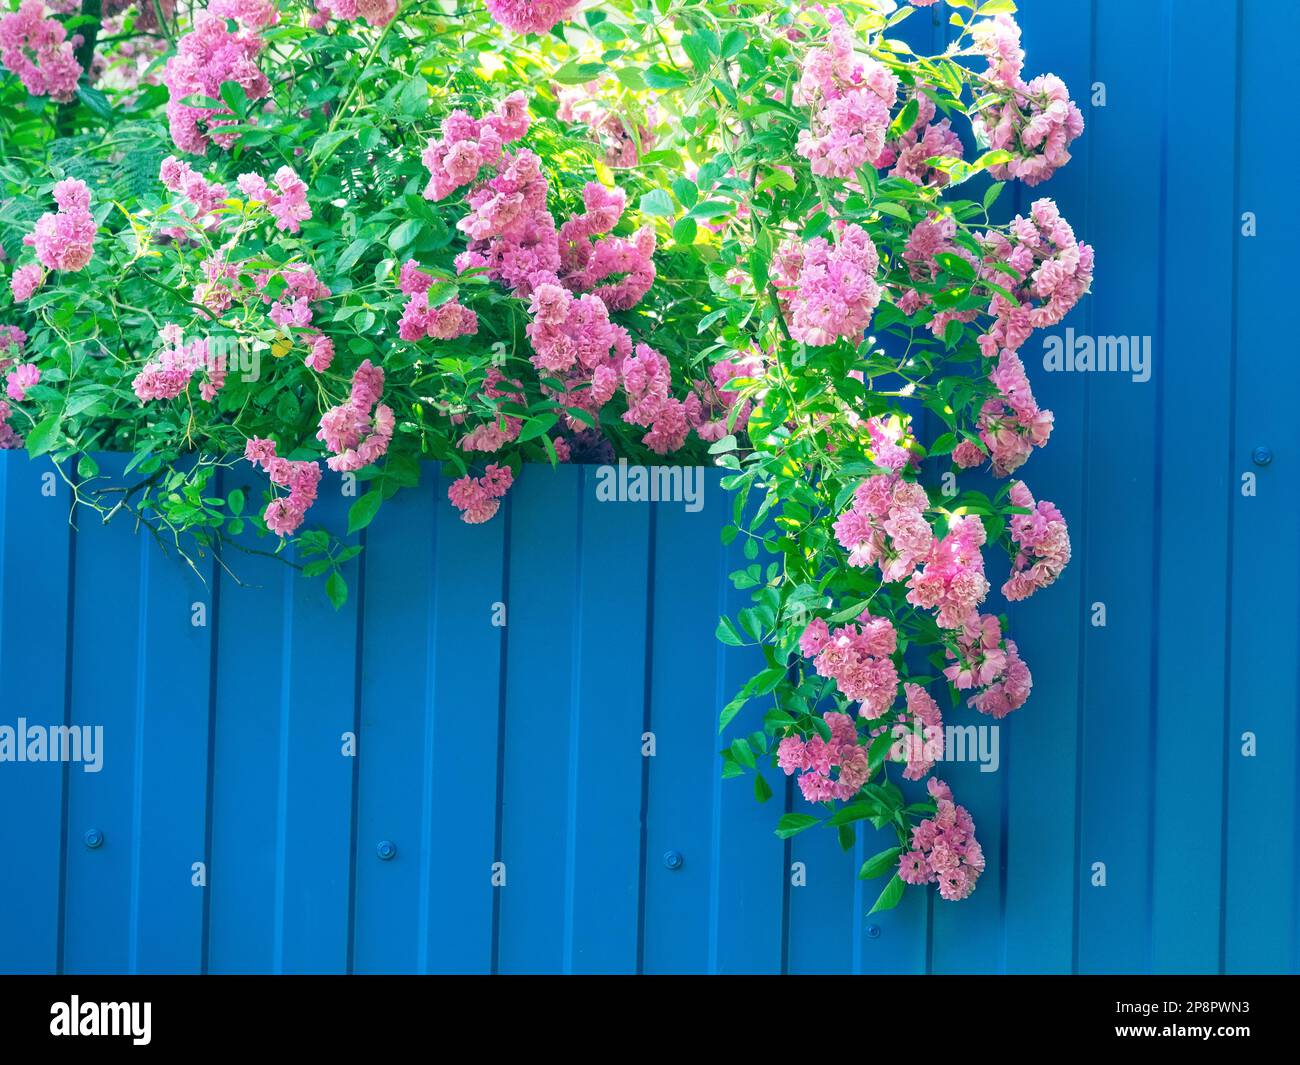 Gartengestaltung, Blumenzucht. Ein Rosenarium aus verschlungenen Rosen (Rosa multiflora) verleiht einem gewöhnlichen blauen Metallzaun Bedeutung Stockfoto